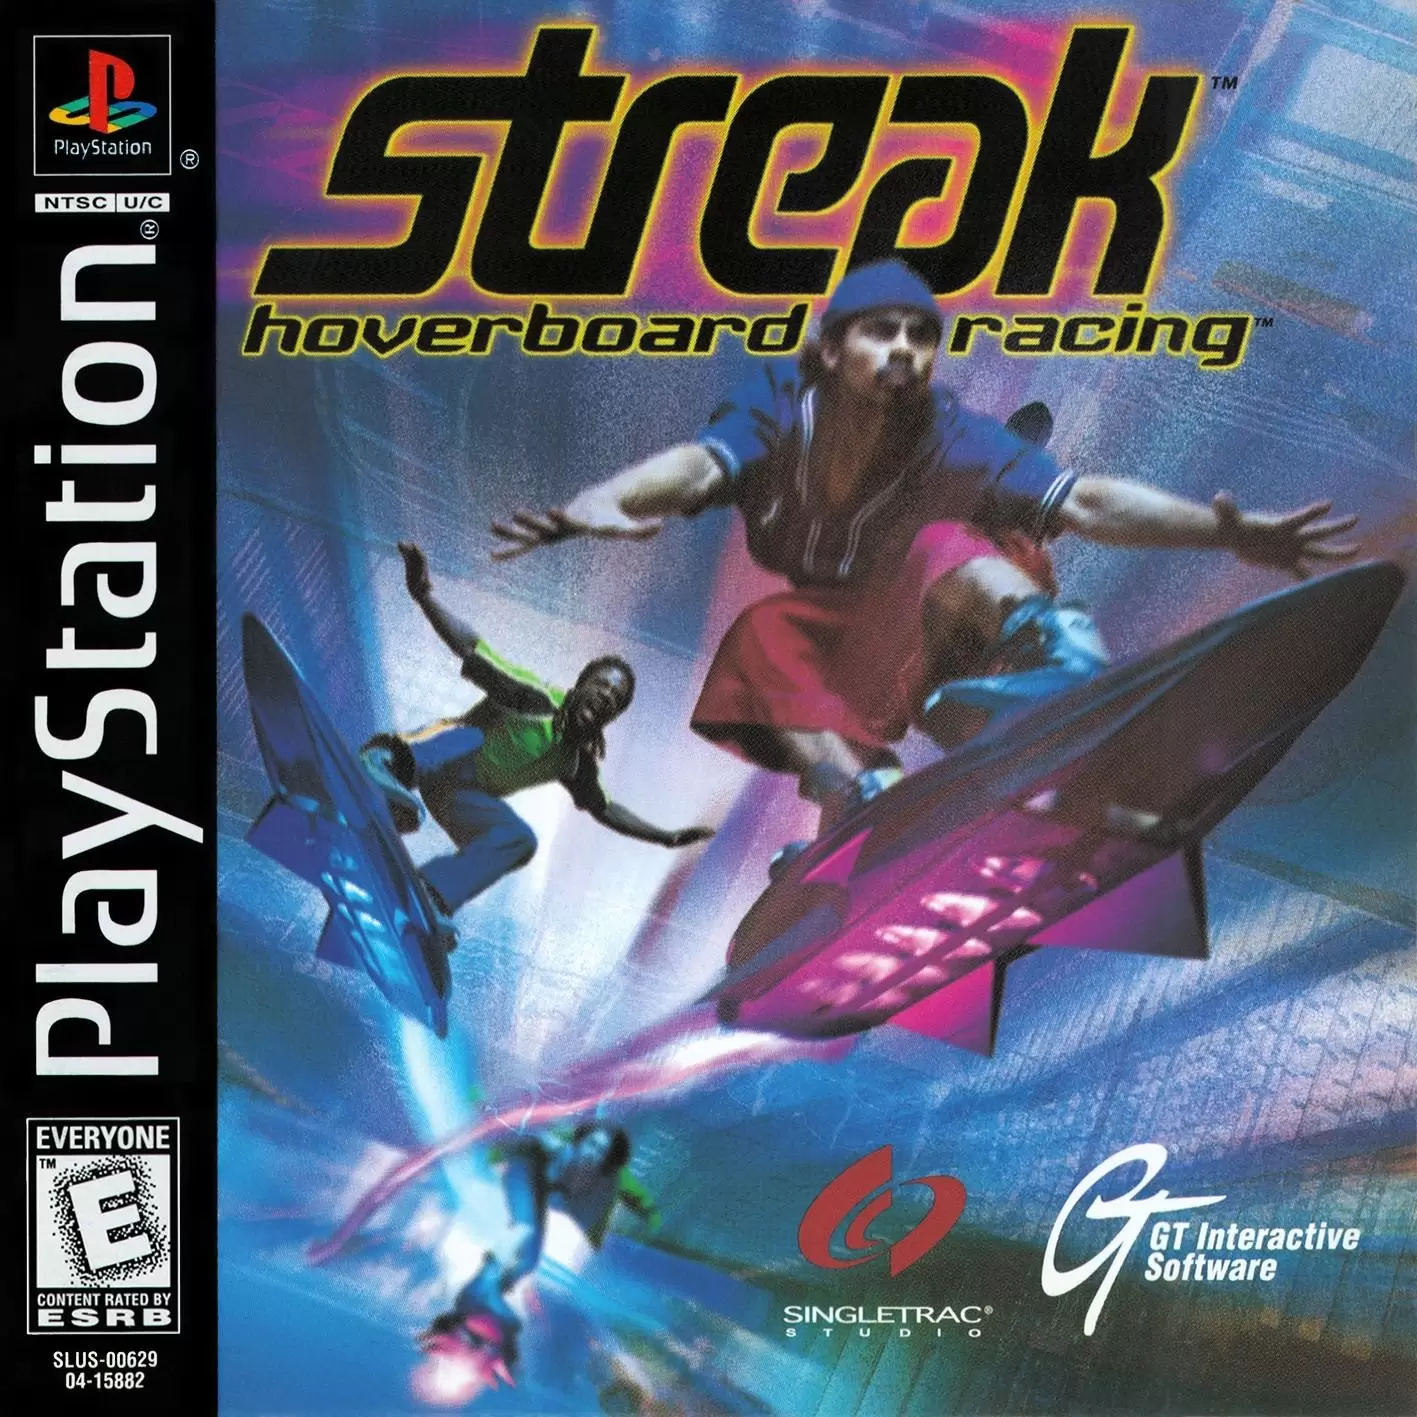 Playstation games - Streak: Hoverboard Racing